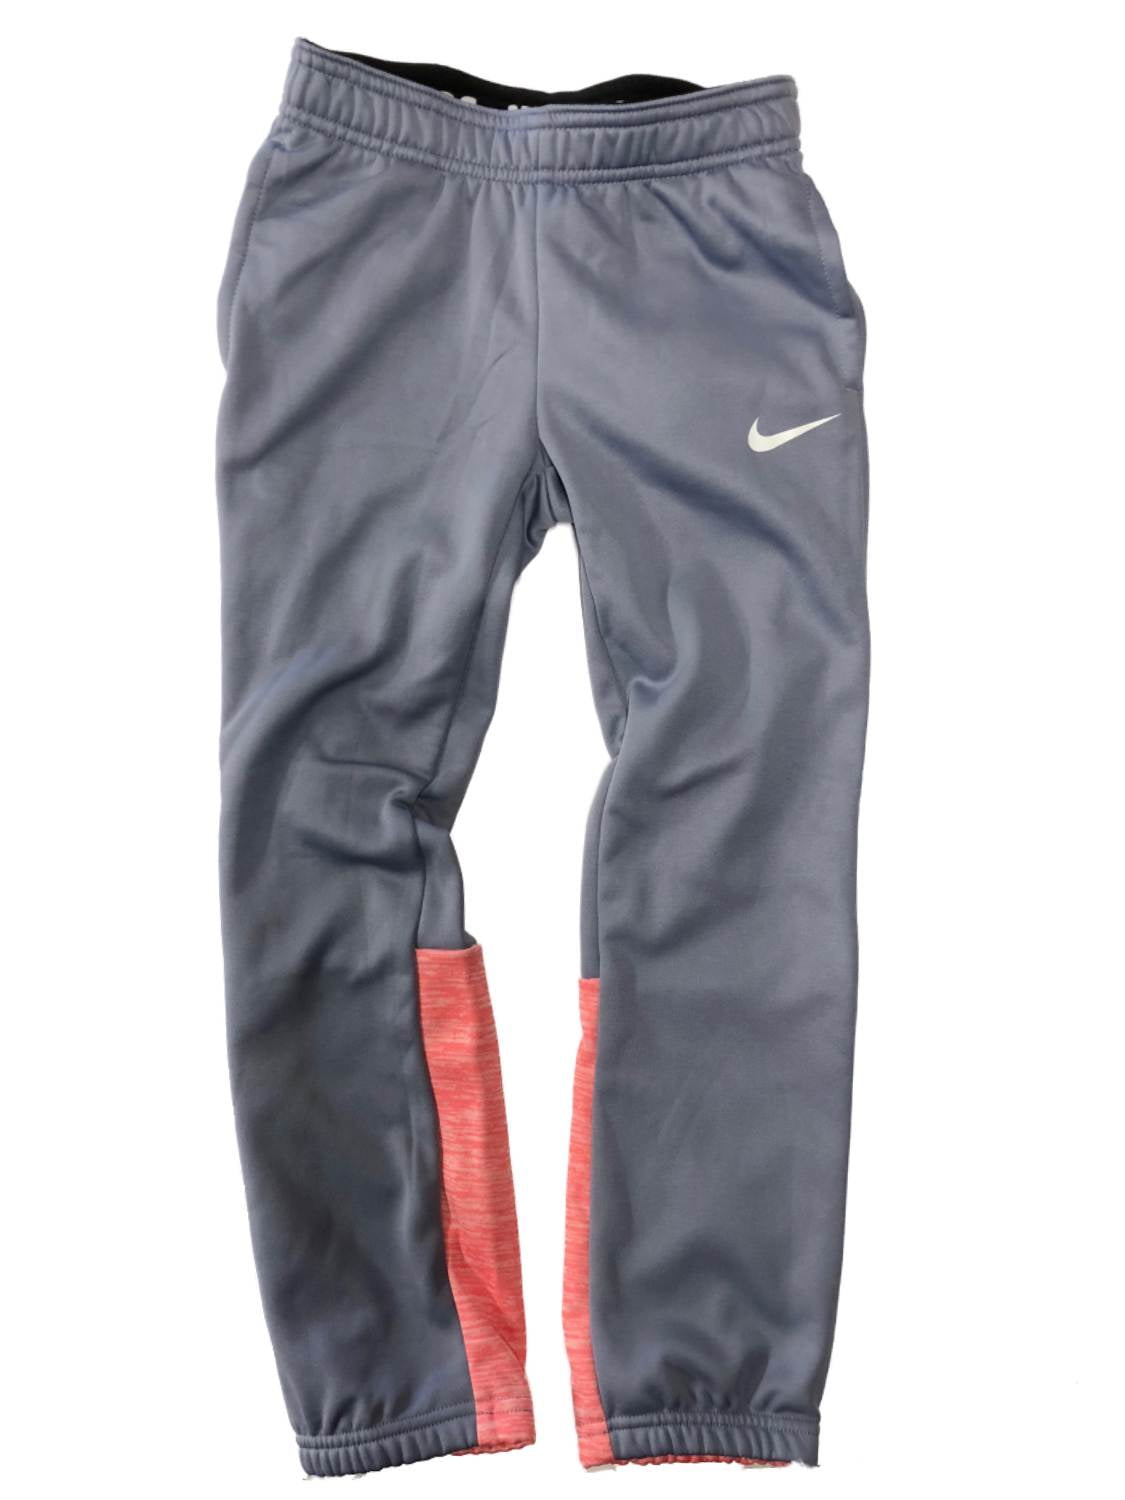 Nike Dry Therma Girls Gray & Pink Dri-fit Athletic Leggings Sweat Pants  S(5)